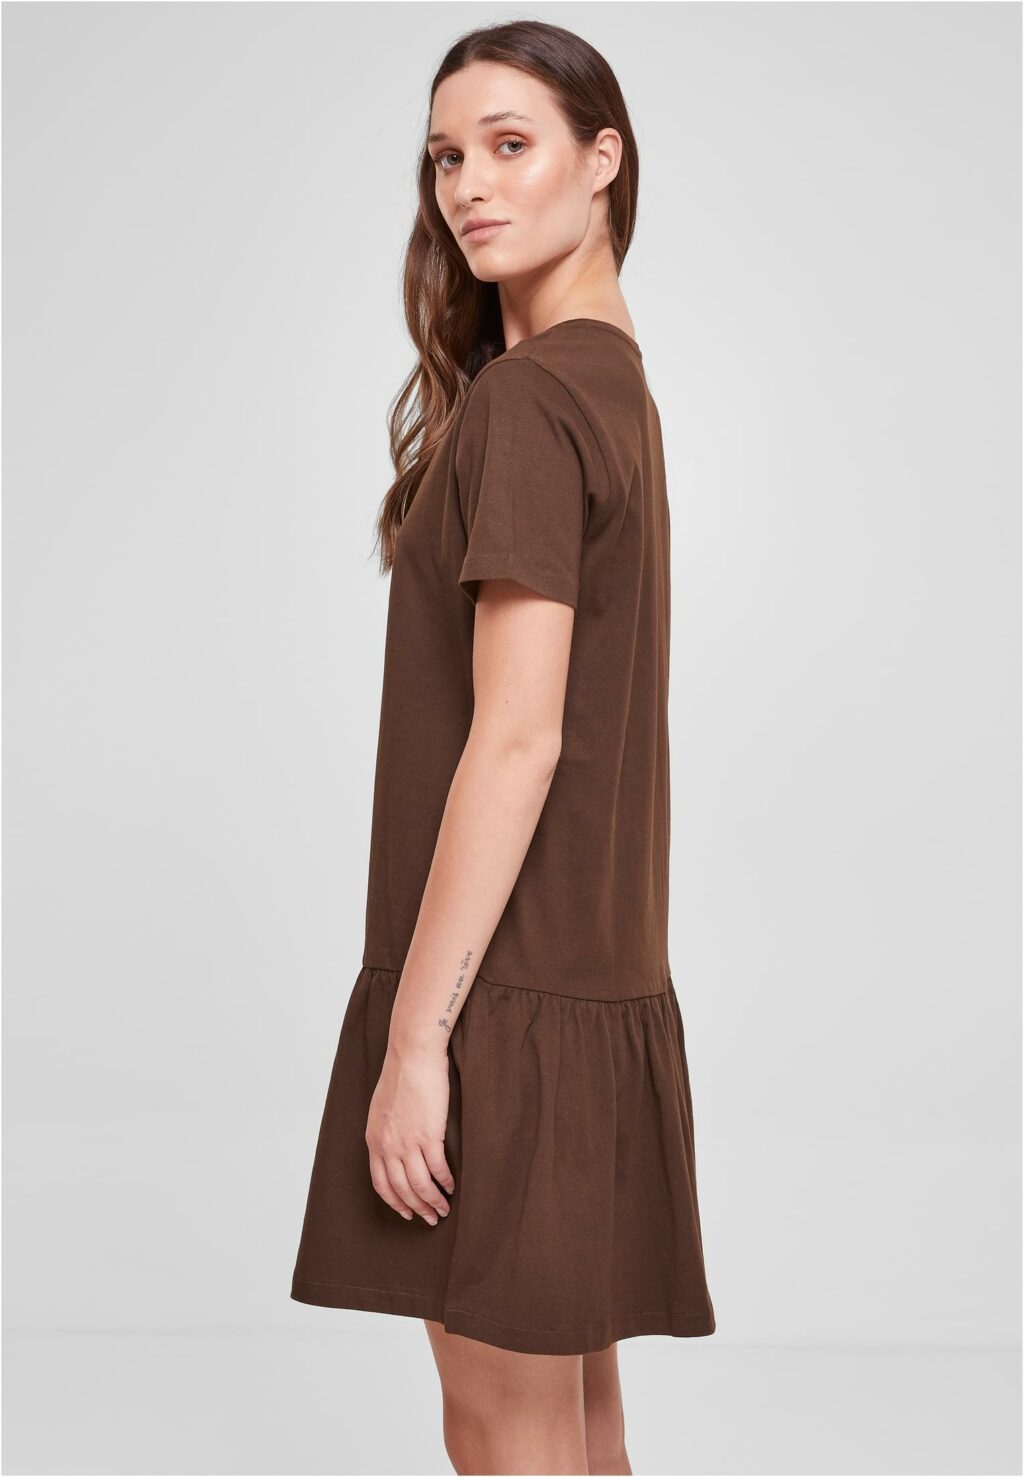 Urban Classics Ladies Valance Tee Dress brown TB4104